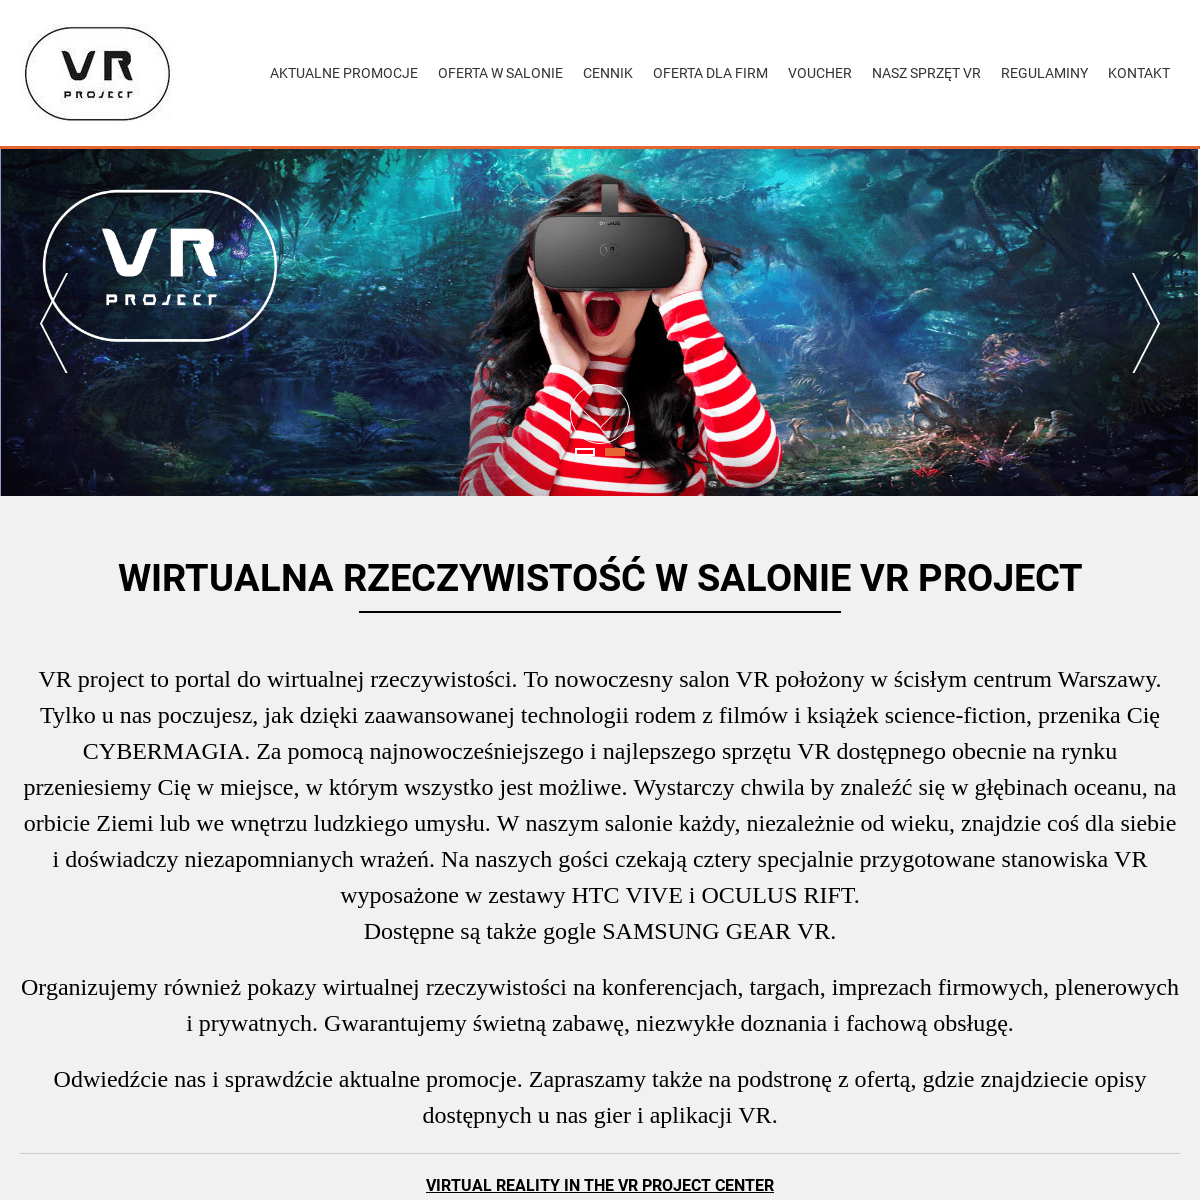 A complete backup of vrproject.com.pl